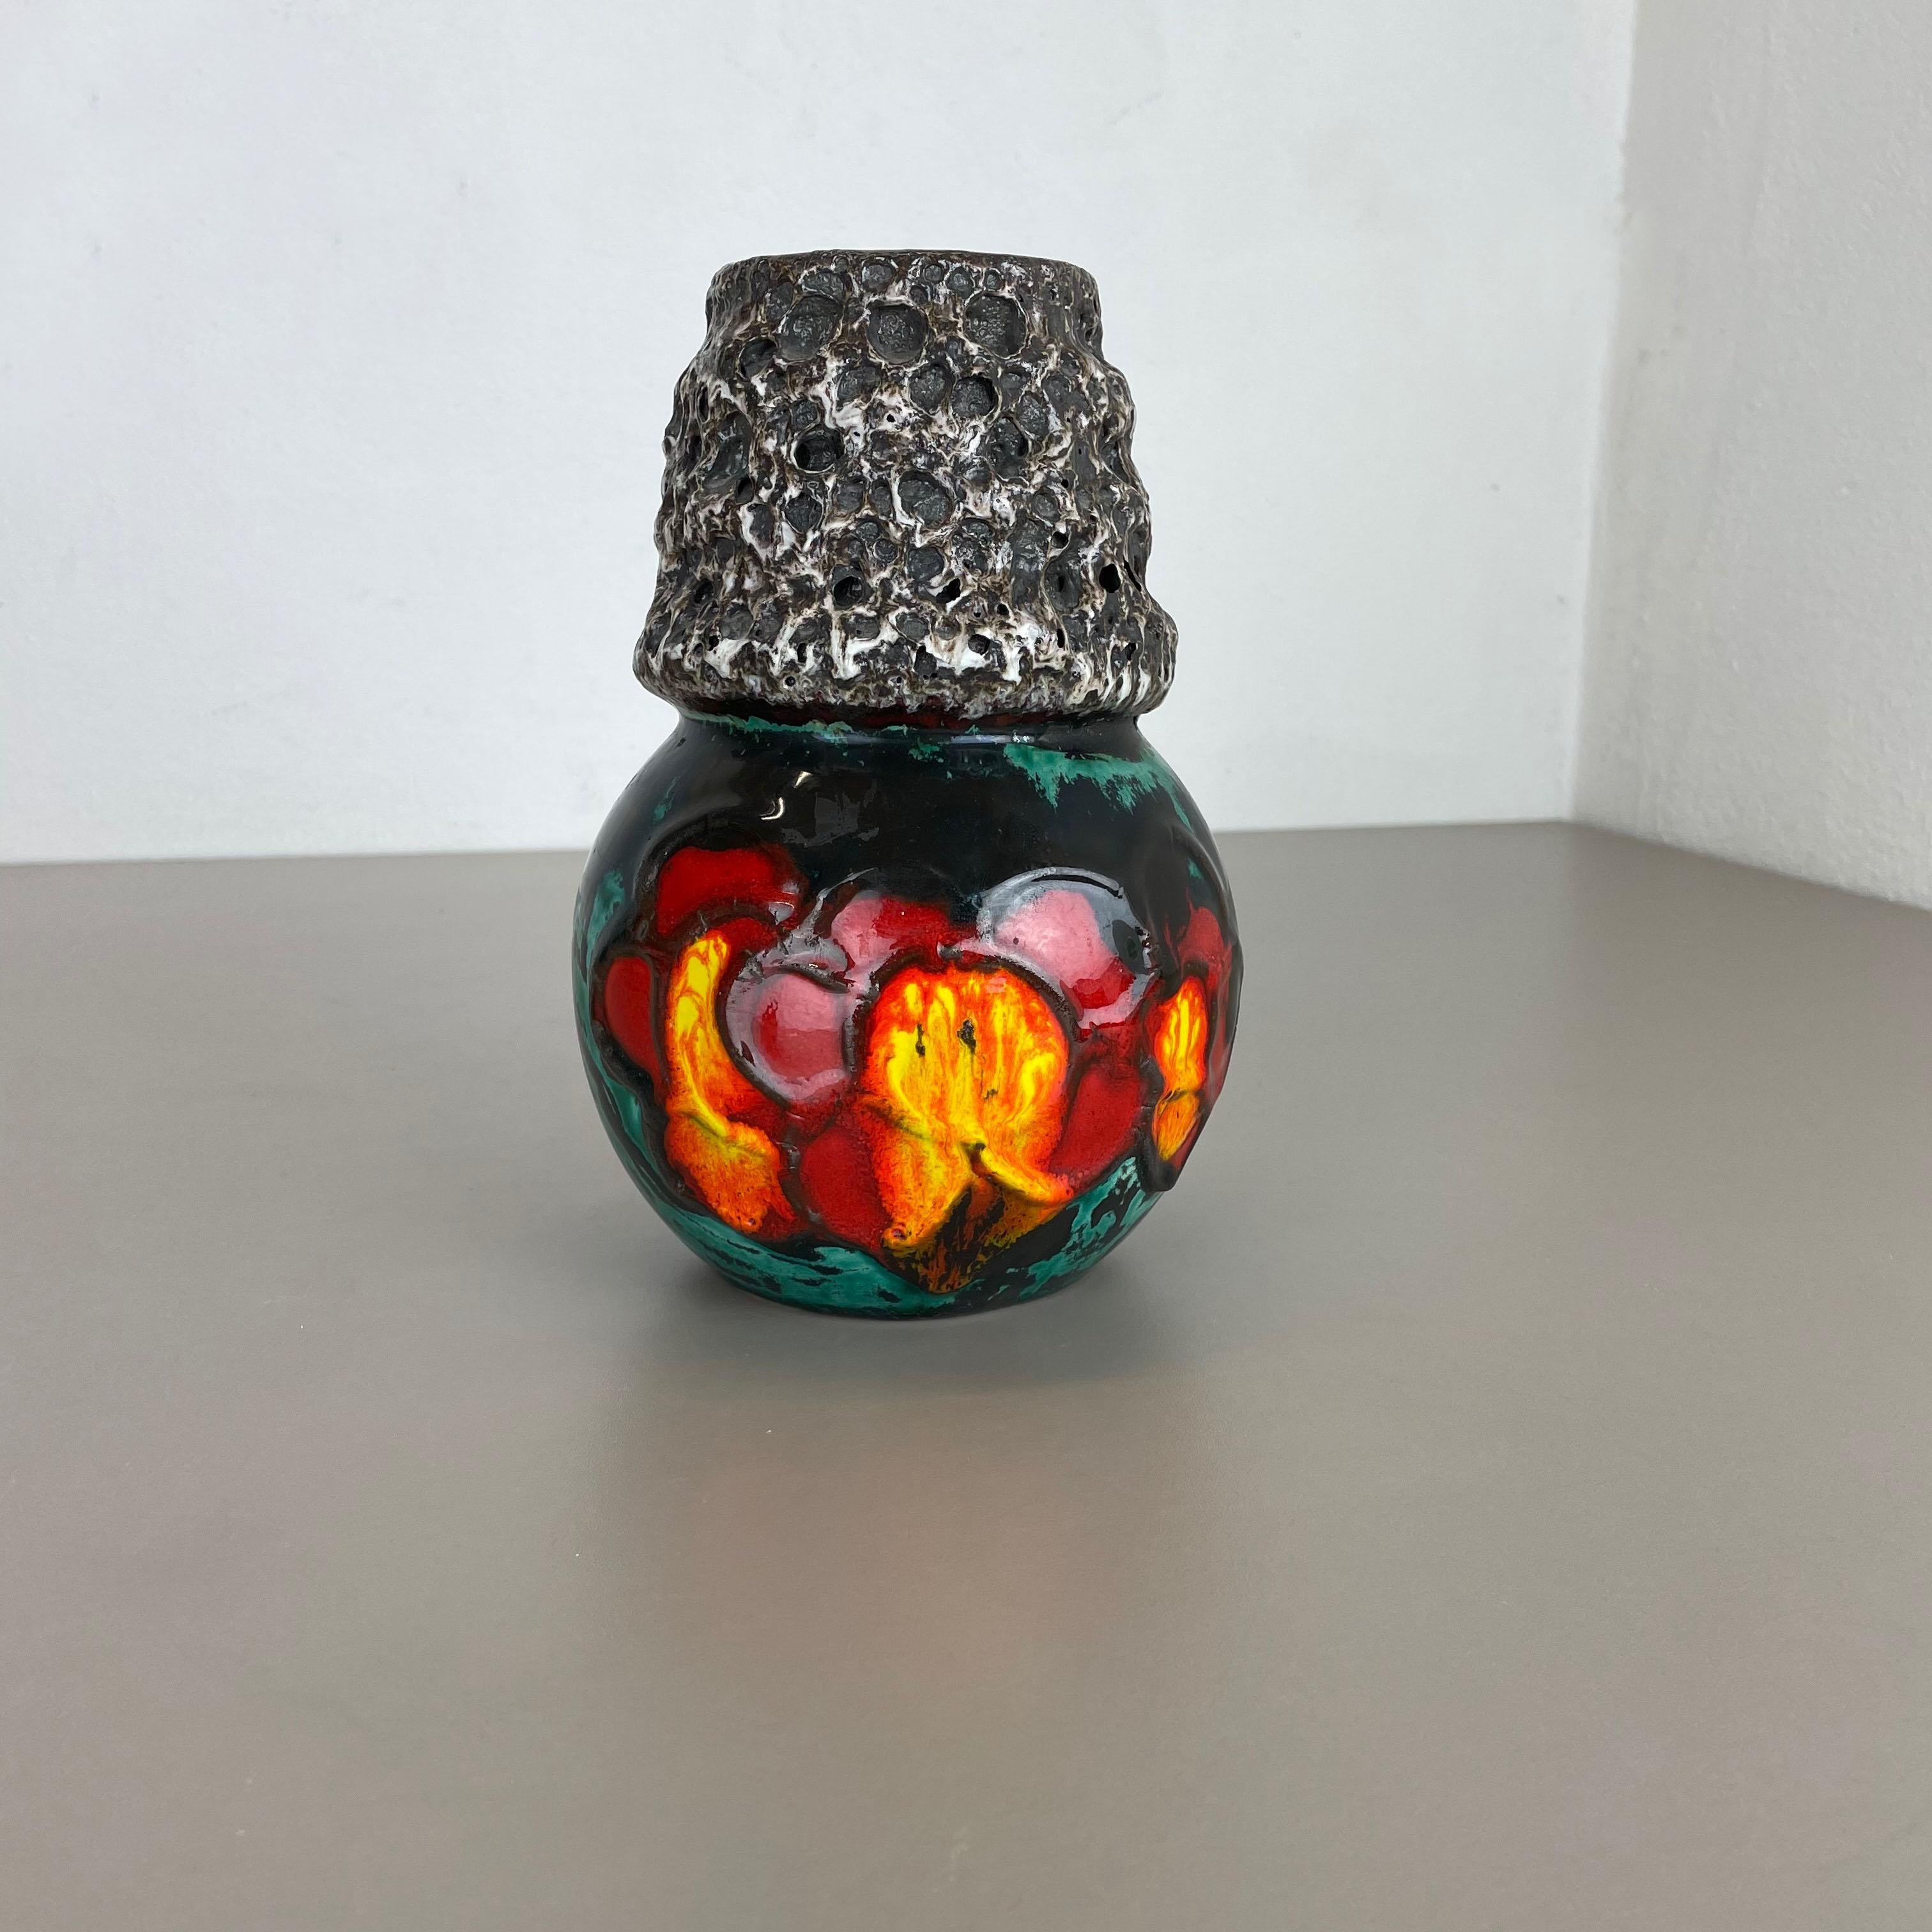 Artikel:

Fat Lava Art Vase super selten gelb, rot, grün, schwarz Färbung


modell: 269-22


Produzent:

Scheurich, Deutschland



Jahrzehnt:

1970s


Beschreibung:

Diese originelle Vintage-Vase wurde in den 1970er Jahren in